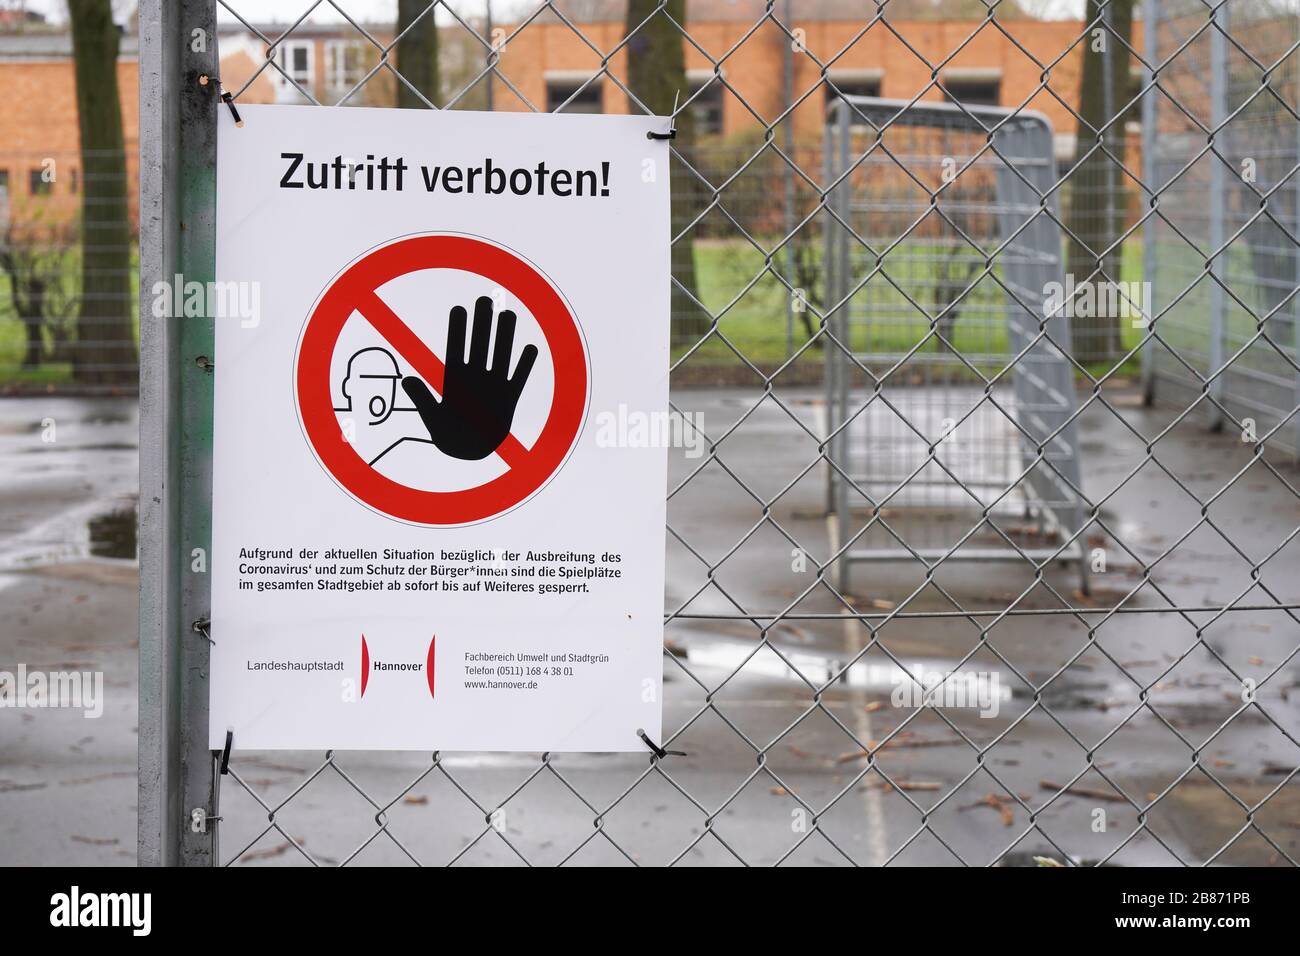 Hannover, Alemania - 20 de marzo de 2020: Cerrado el campo deportivo con Kein Zutritt verboten - que significa no entrar en alemán - signo de prohibición como medida de distanciamiento social durante la crisis de la epidemia de corona Foto de stock